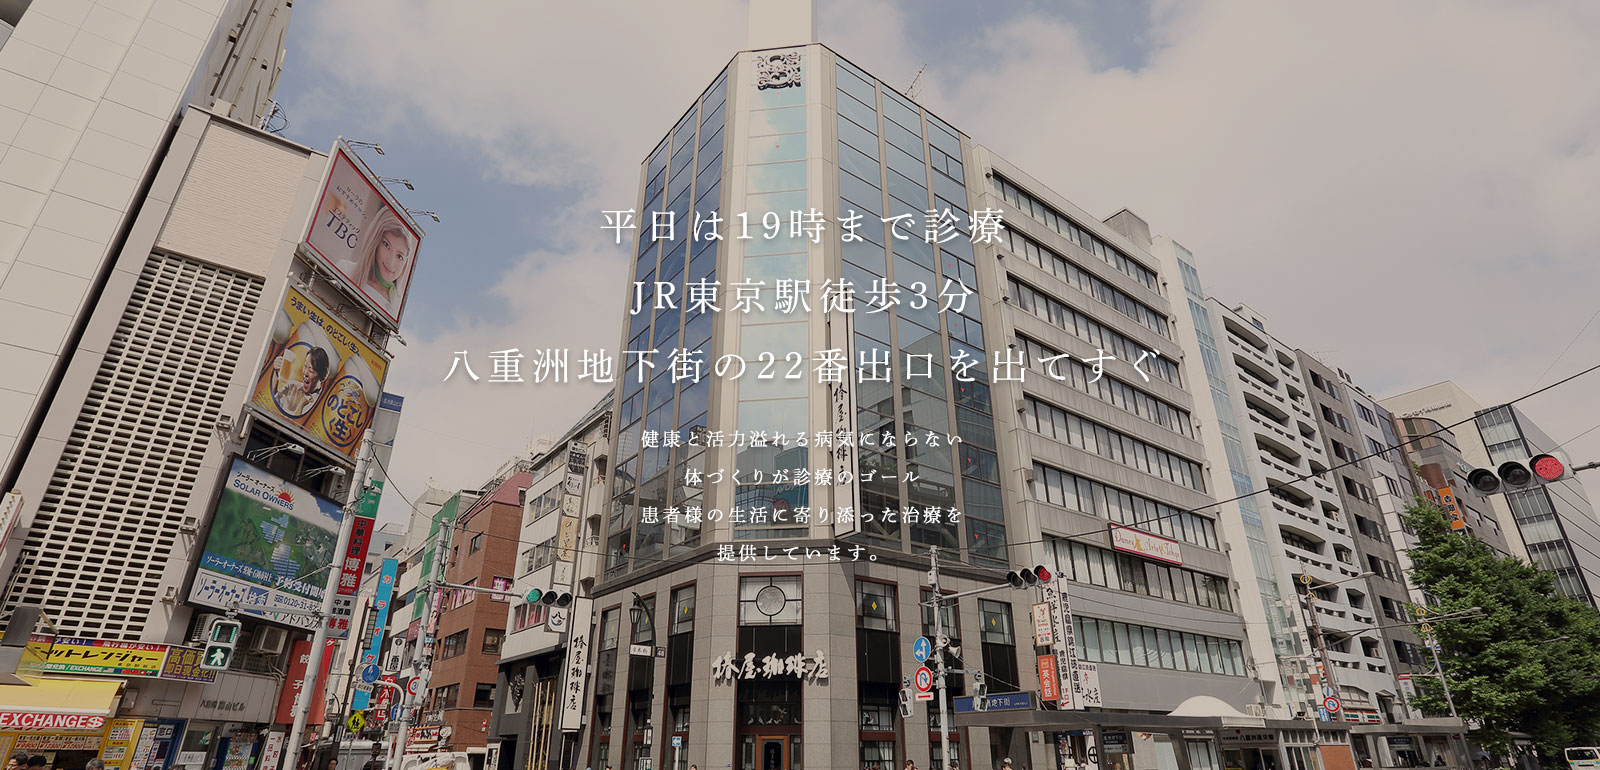 アクセス・19時までの診療JR東京駅徒歩3分八重洲地下街の22番出口をでてすぐ